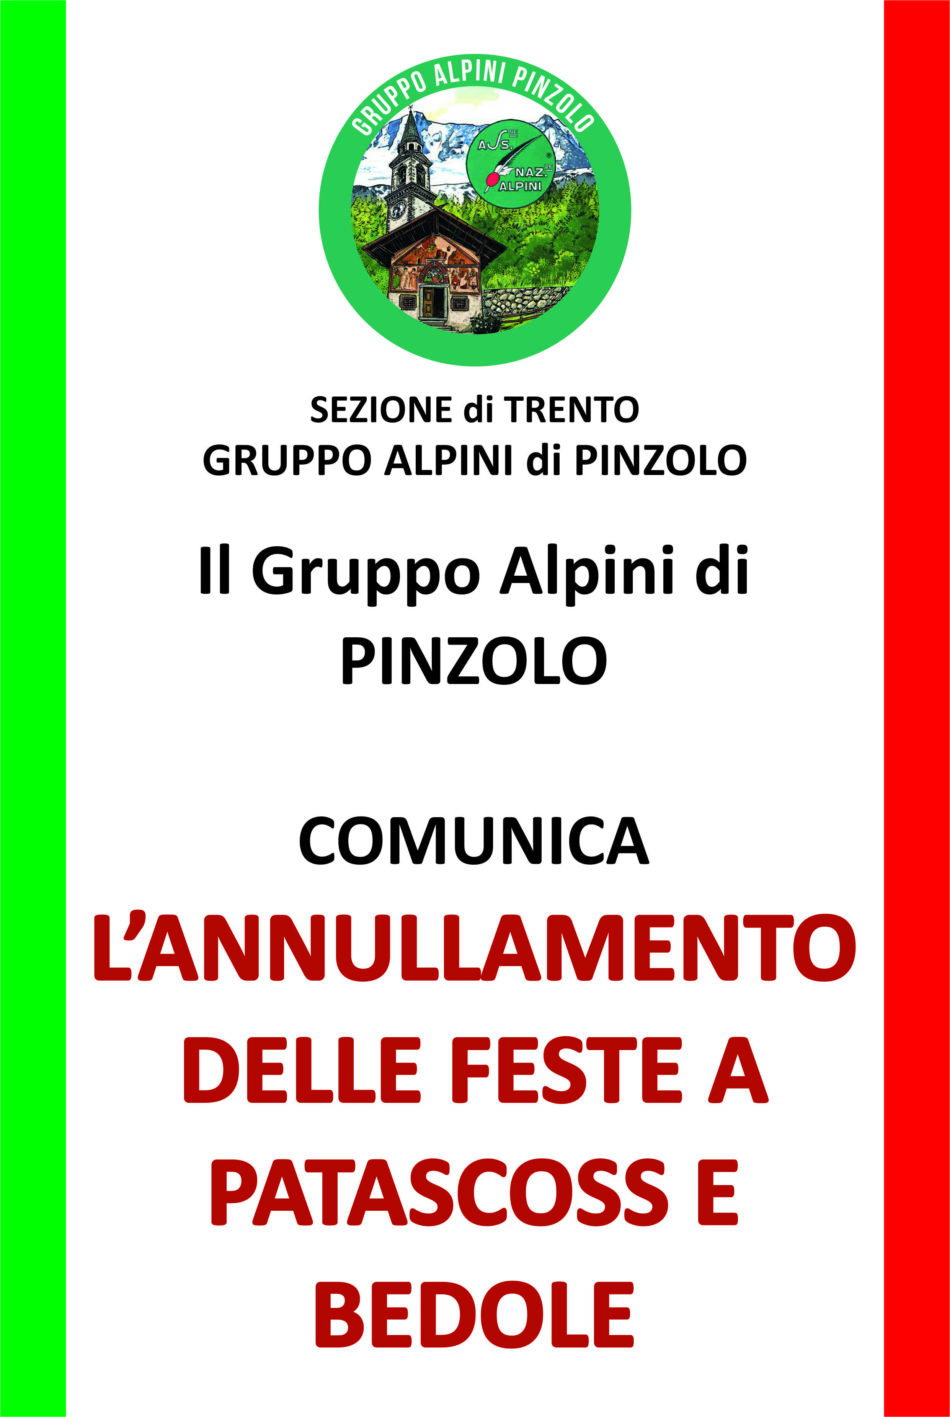 Alpini Pinzolo: annullamento delle feste a Patascoss e Bedole